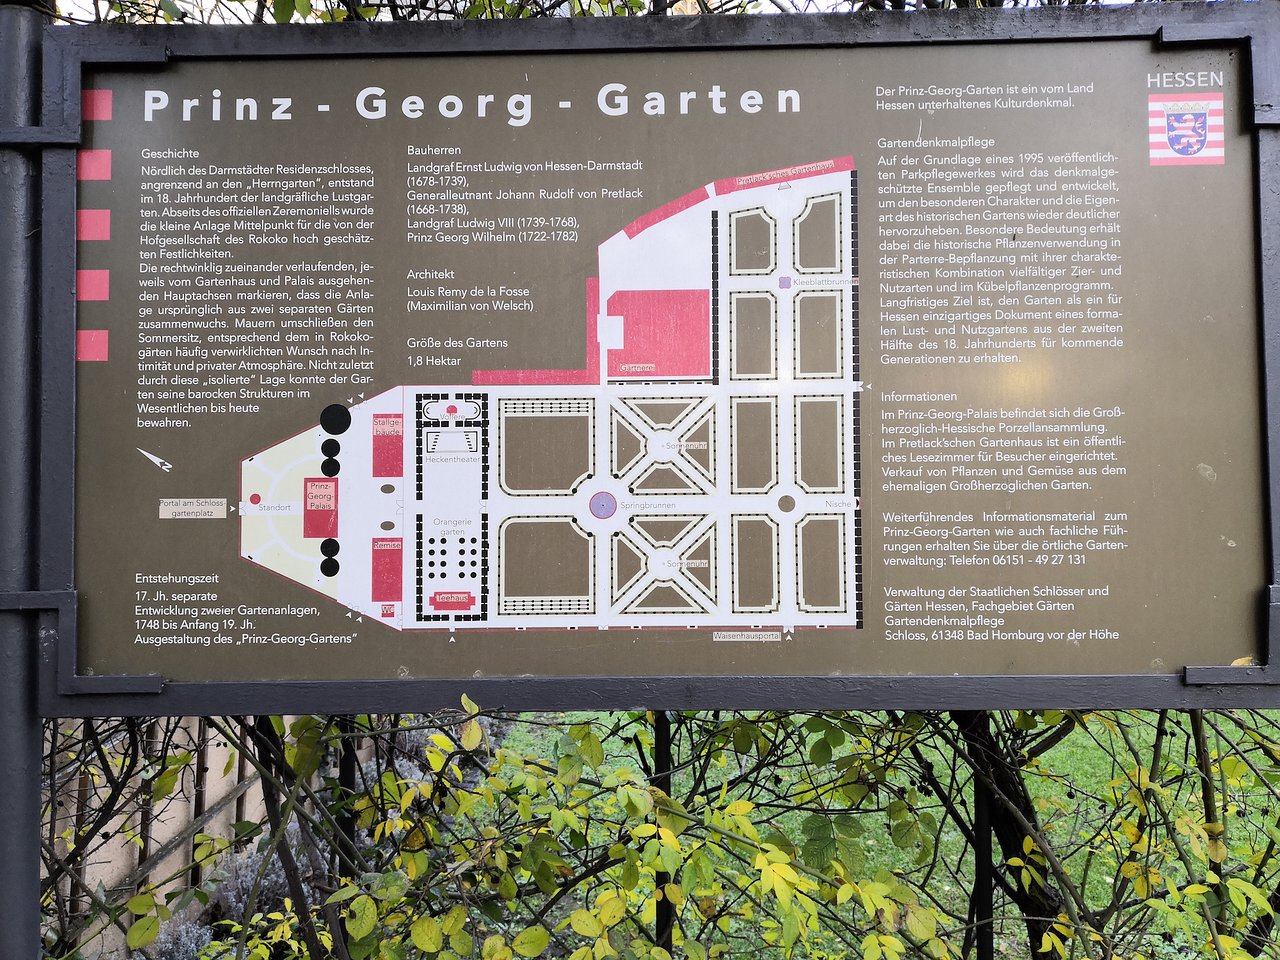 Design Garten Frisch Prinz Georg Garten ÐÐ°ÑÐ¼ÑÑÐ°Ð´Ñ Ð ÑÑÑÐ¸Ðµ ÑÐ¾Ð²ÐµÑÑ Ð¿ÐµÑÐµÐ´ Ð¿Ð¾ÑÐµÑÐµÐ½Ð¸ÐµÐ¼